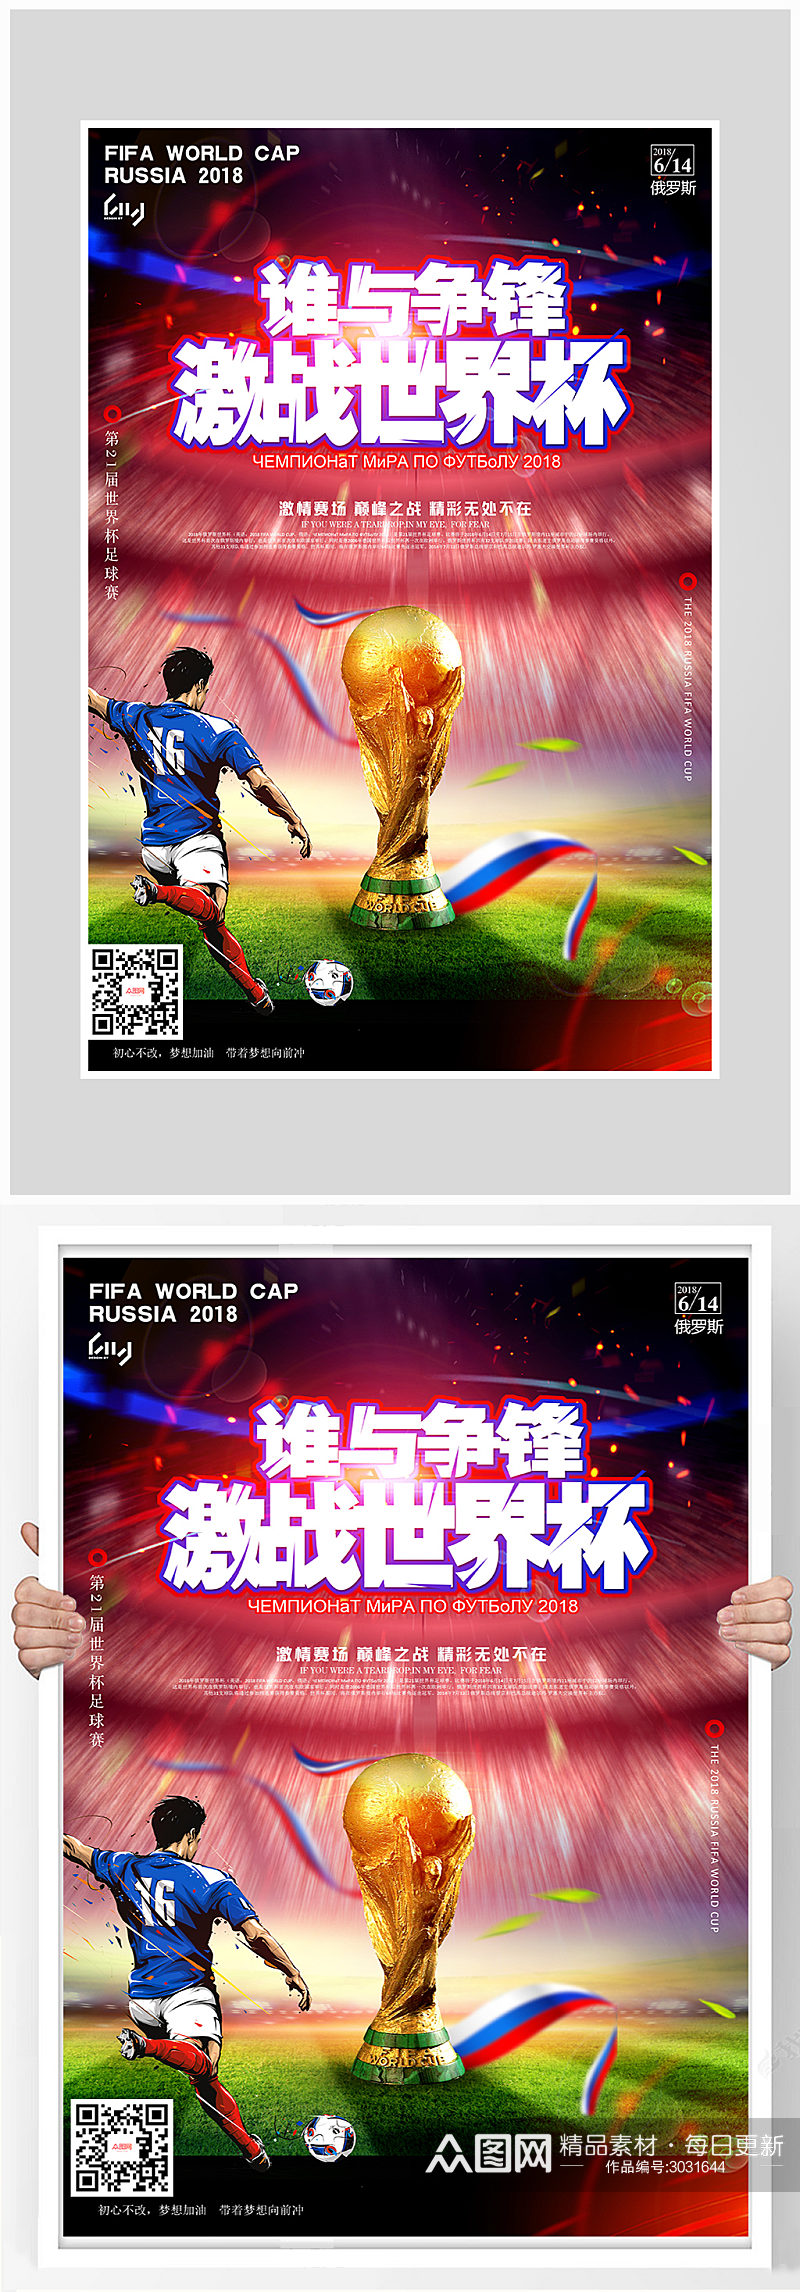 激战世界杯足球比赛海报设计素材